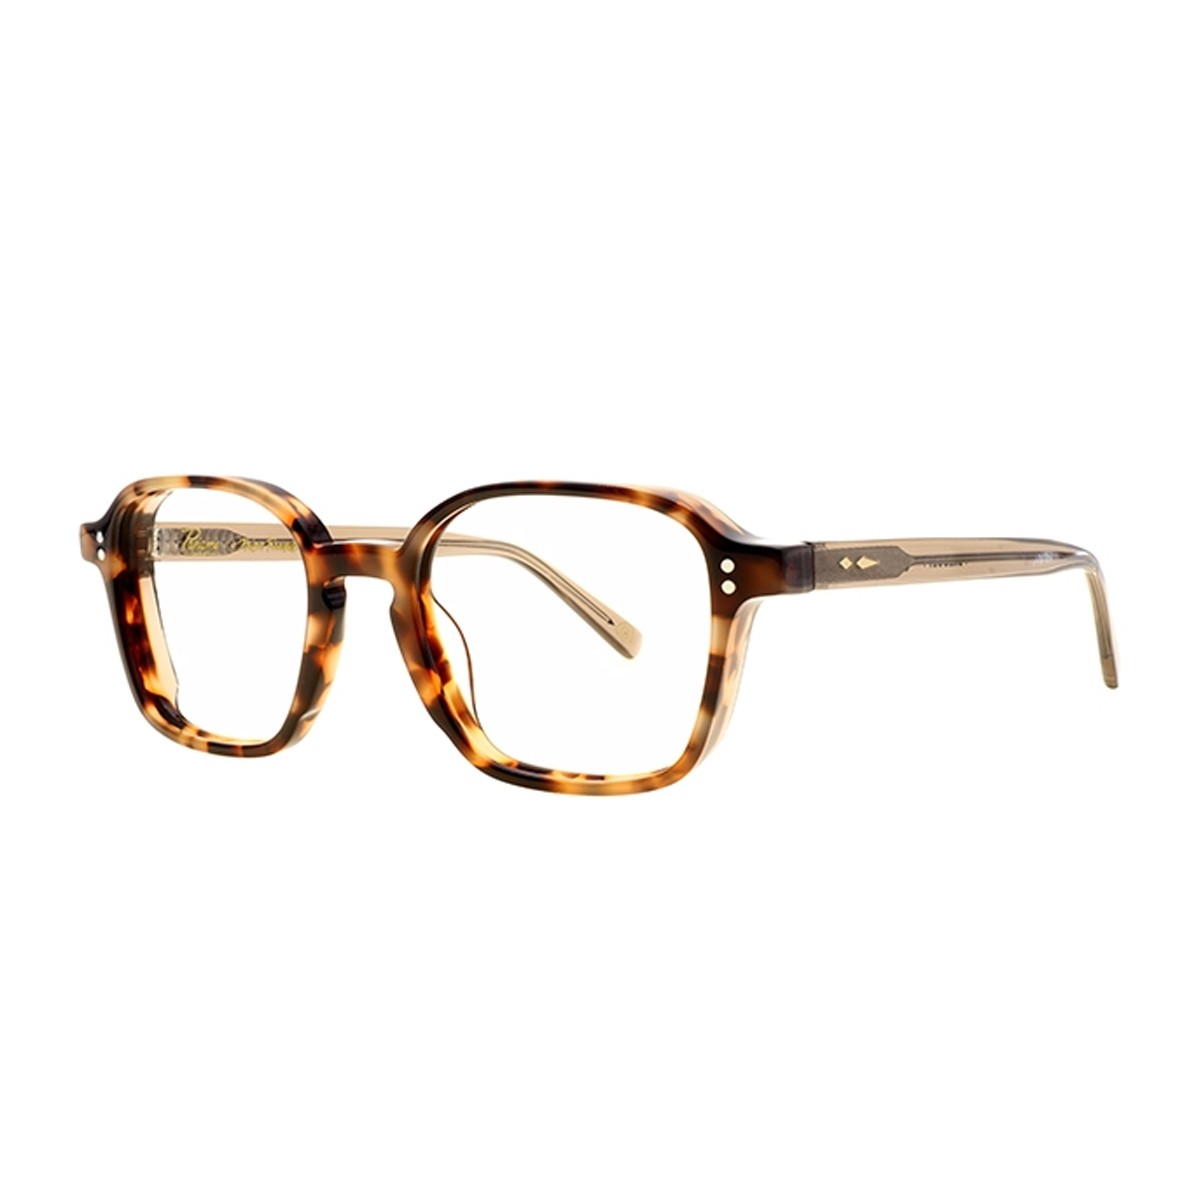 Paname Breguet C2 | Men's eyeglasses